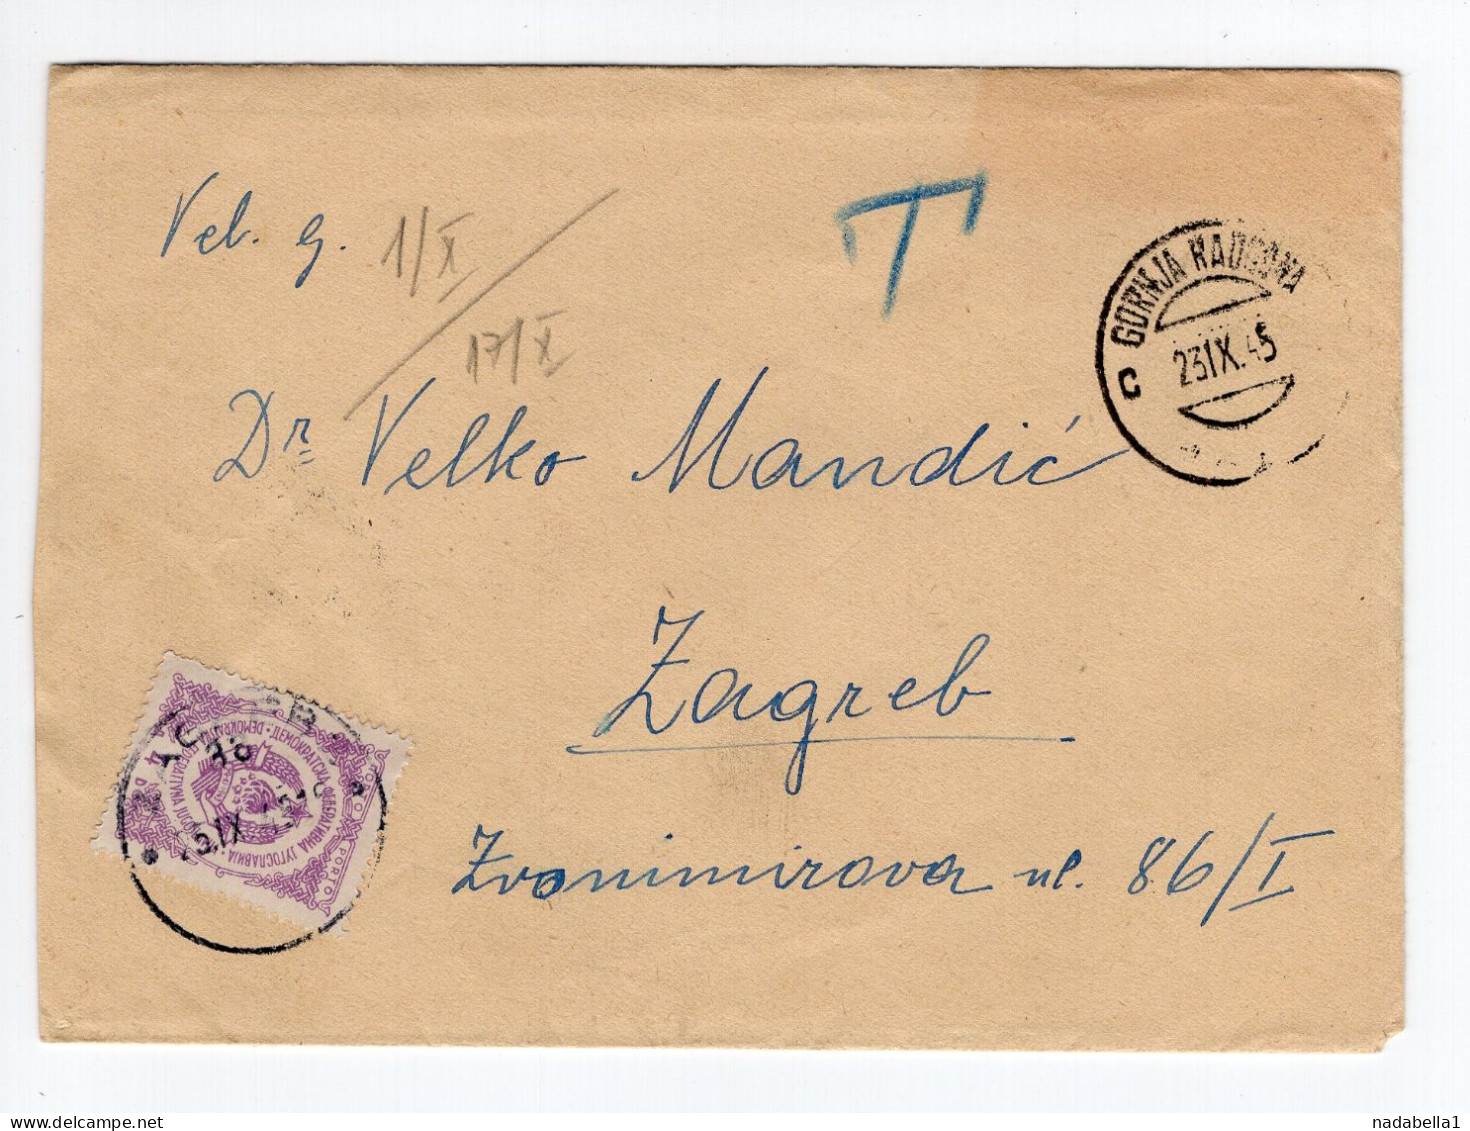 1945. YUGOSLAVIA,SLOVENIA,GORNJA RADGONA,NO STAMP COVER,POSTAGE DUE IN ZAGREB - Postage Due